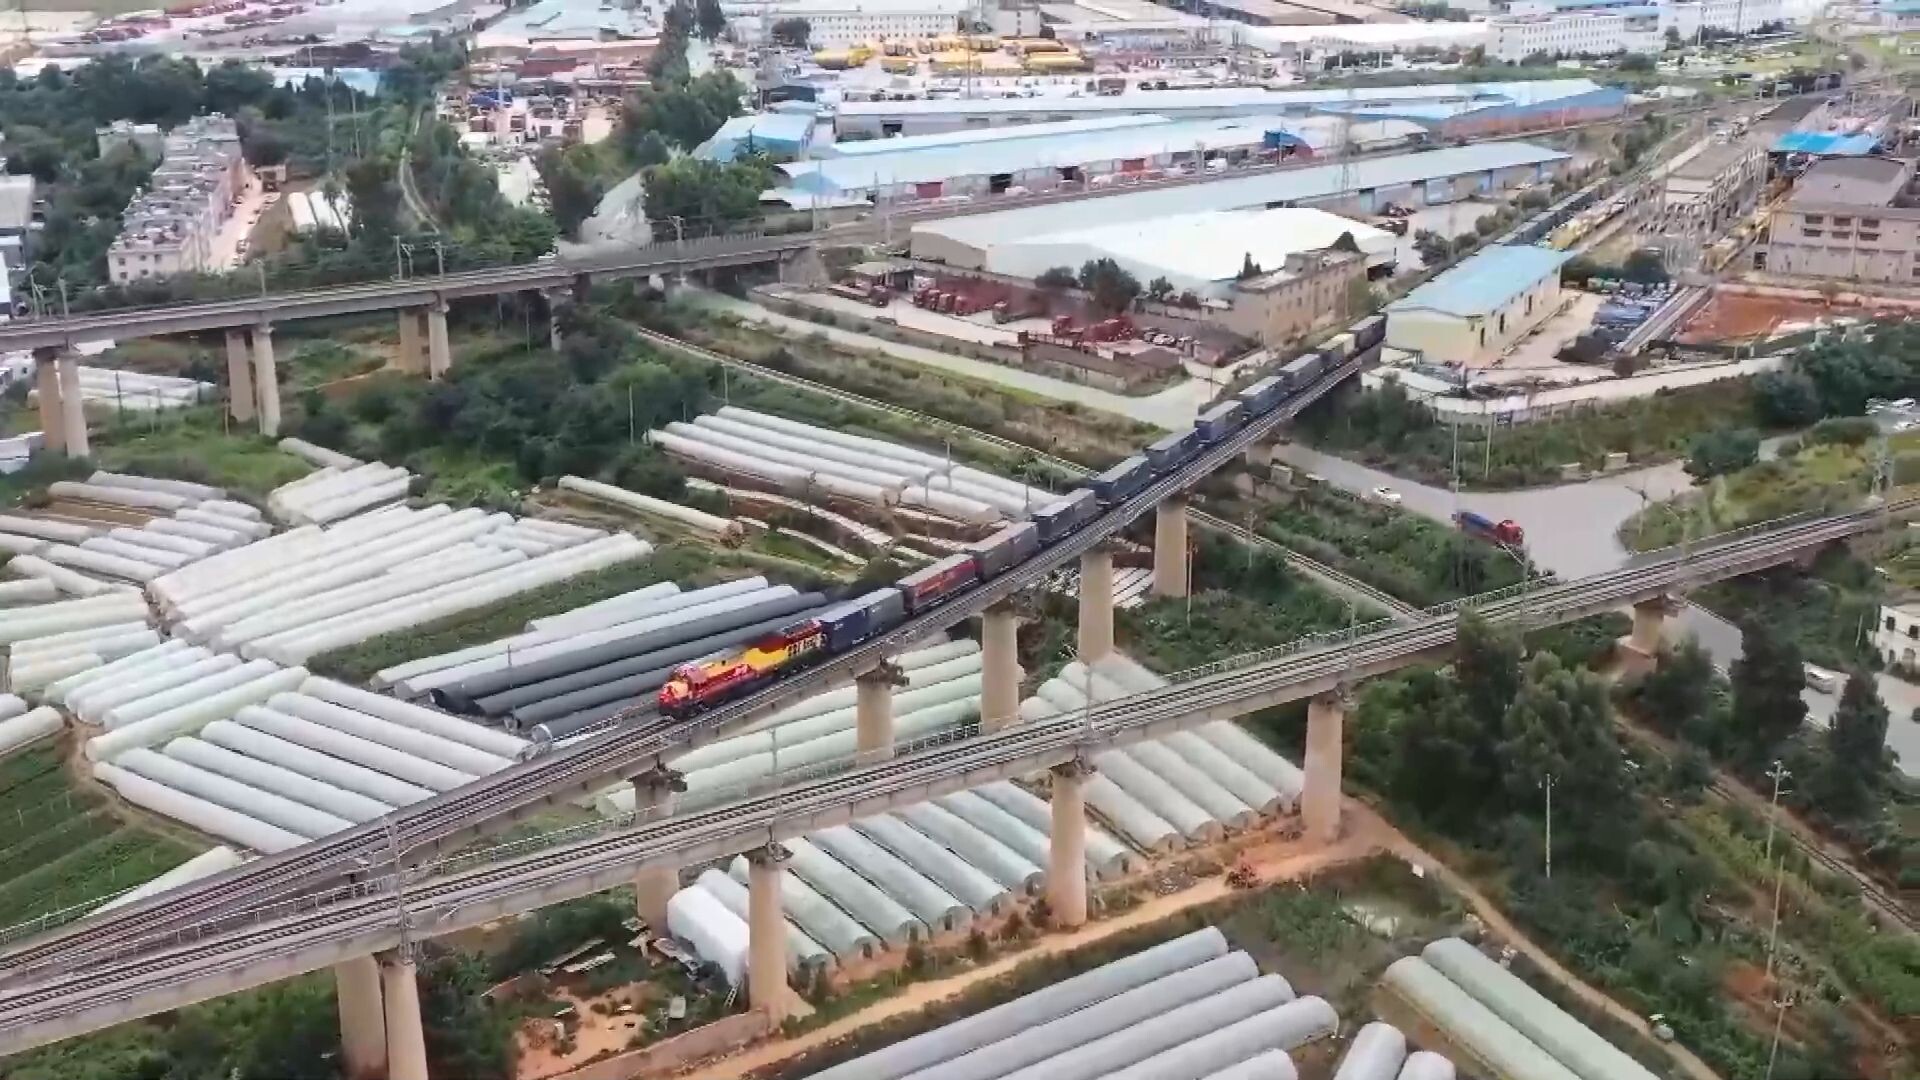 ทางรถไฟจีน-ลาว ขนส่งสินค้าทะลุ 10 ล้านตัน